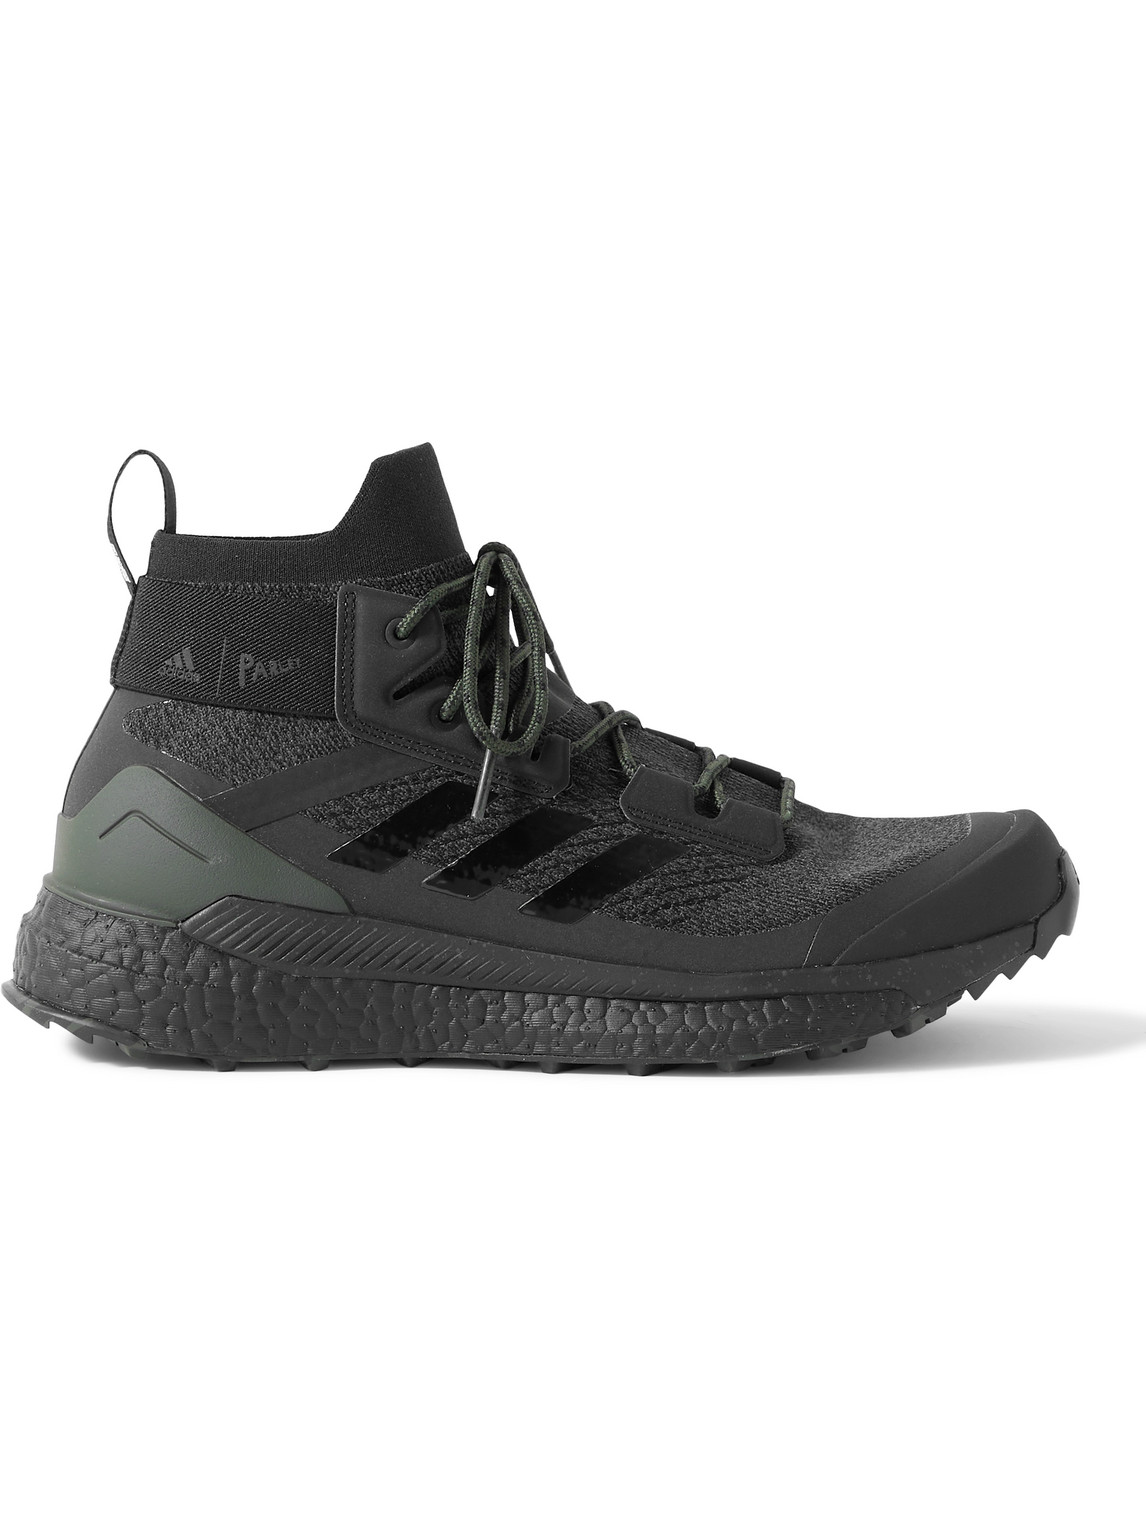 Adidas Consortium Parley Terrex Free Hiker Primeknit Sneakers In Black